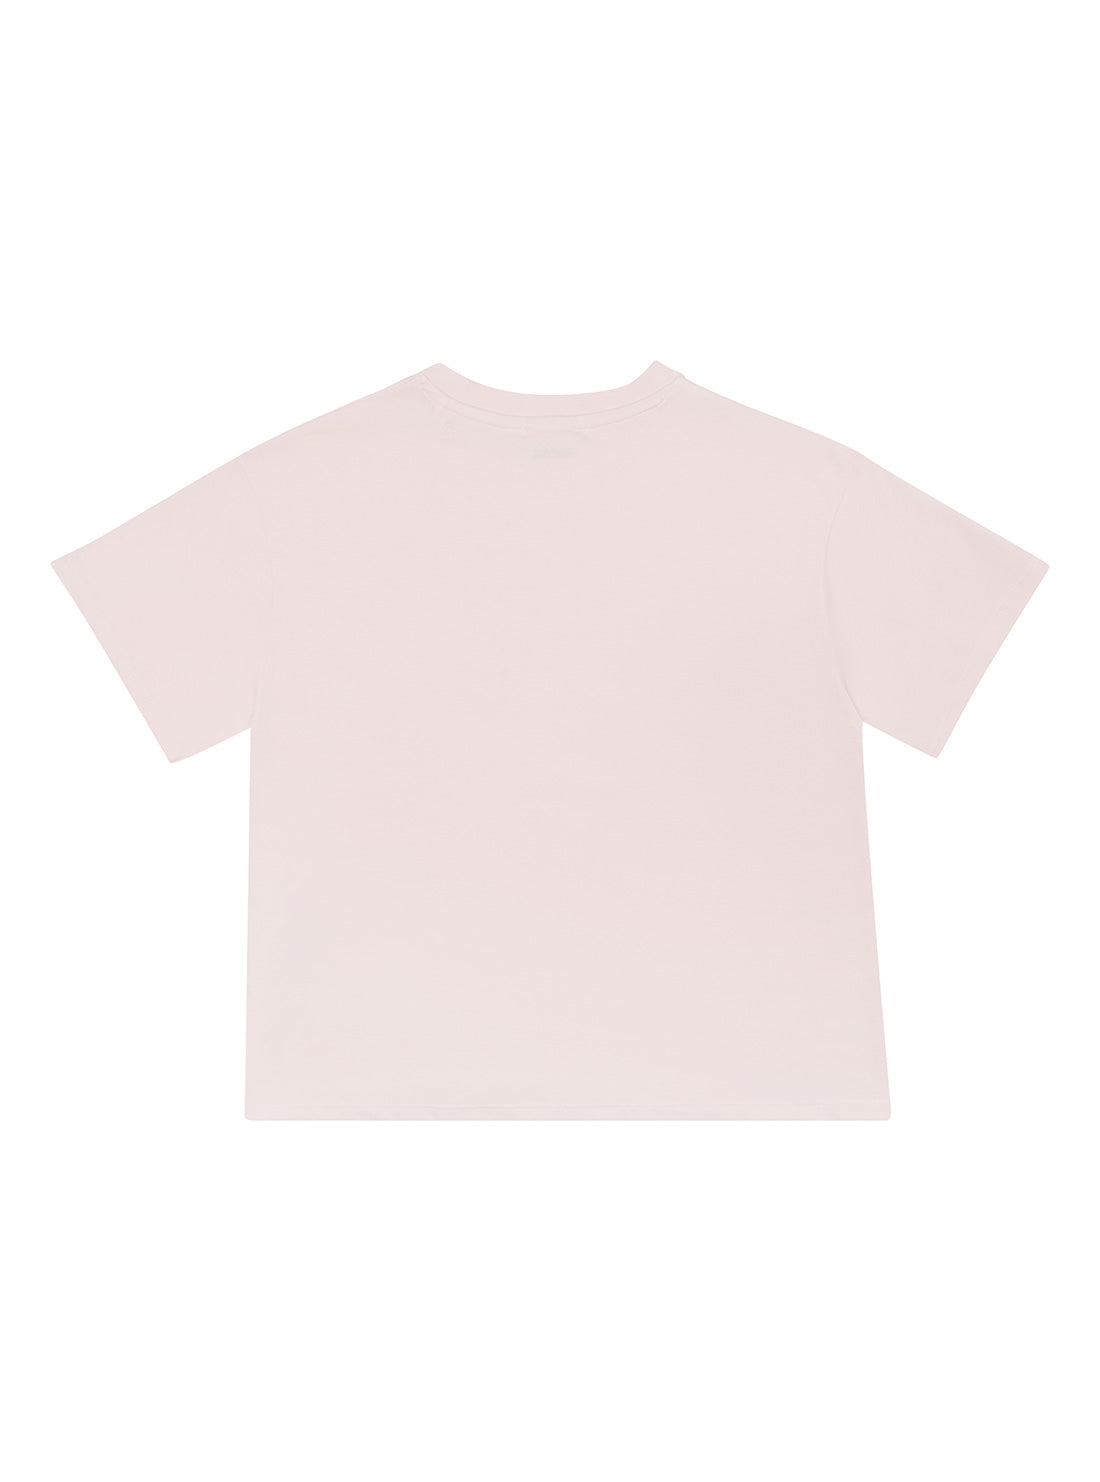 Pink Logo Print T-Shirt (8-16)